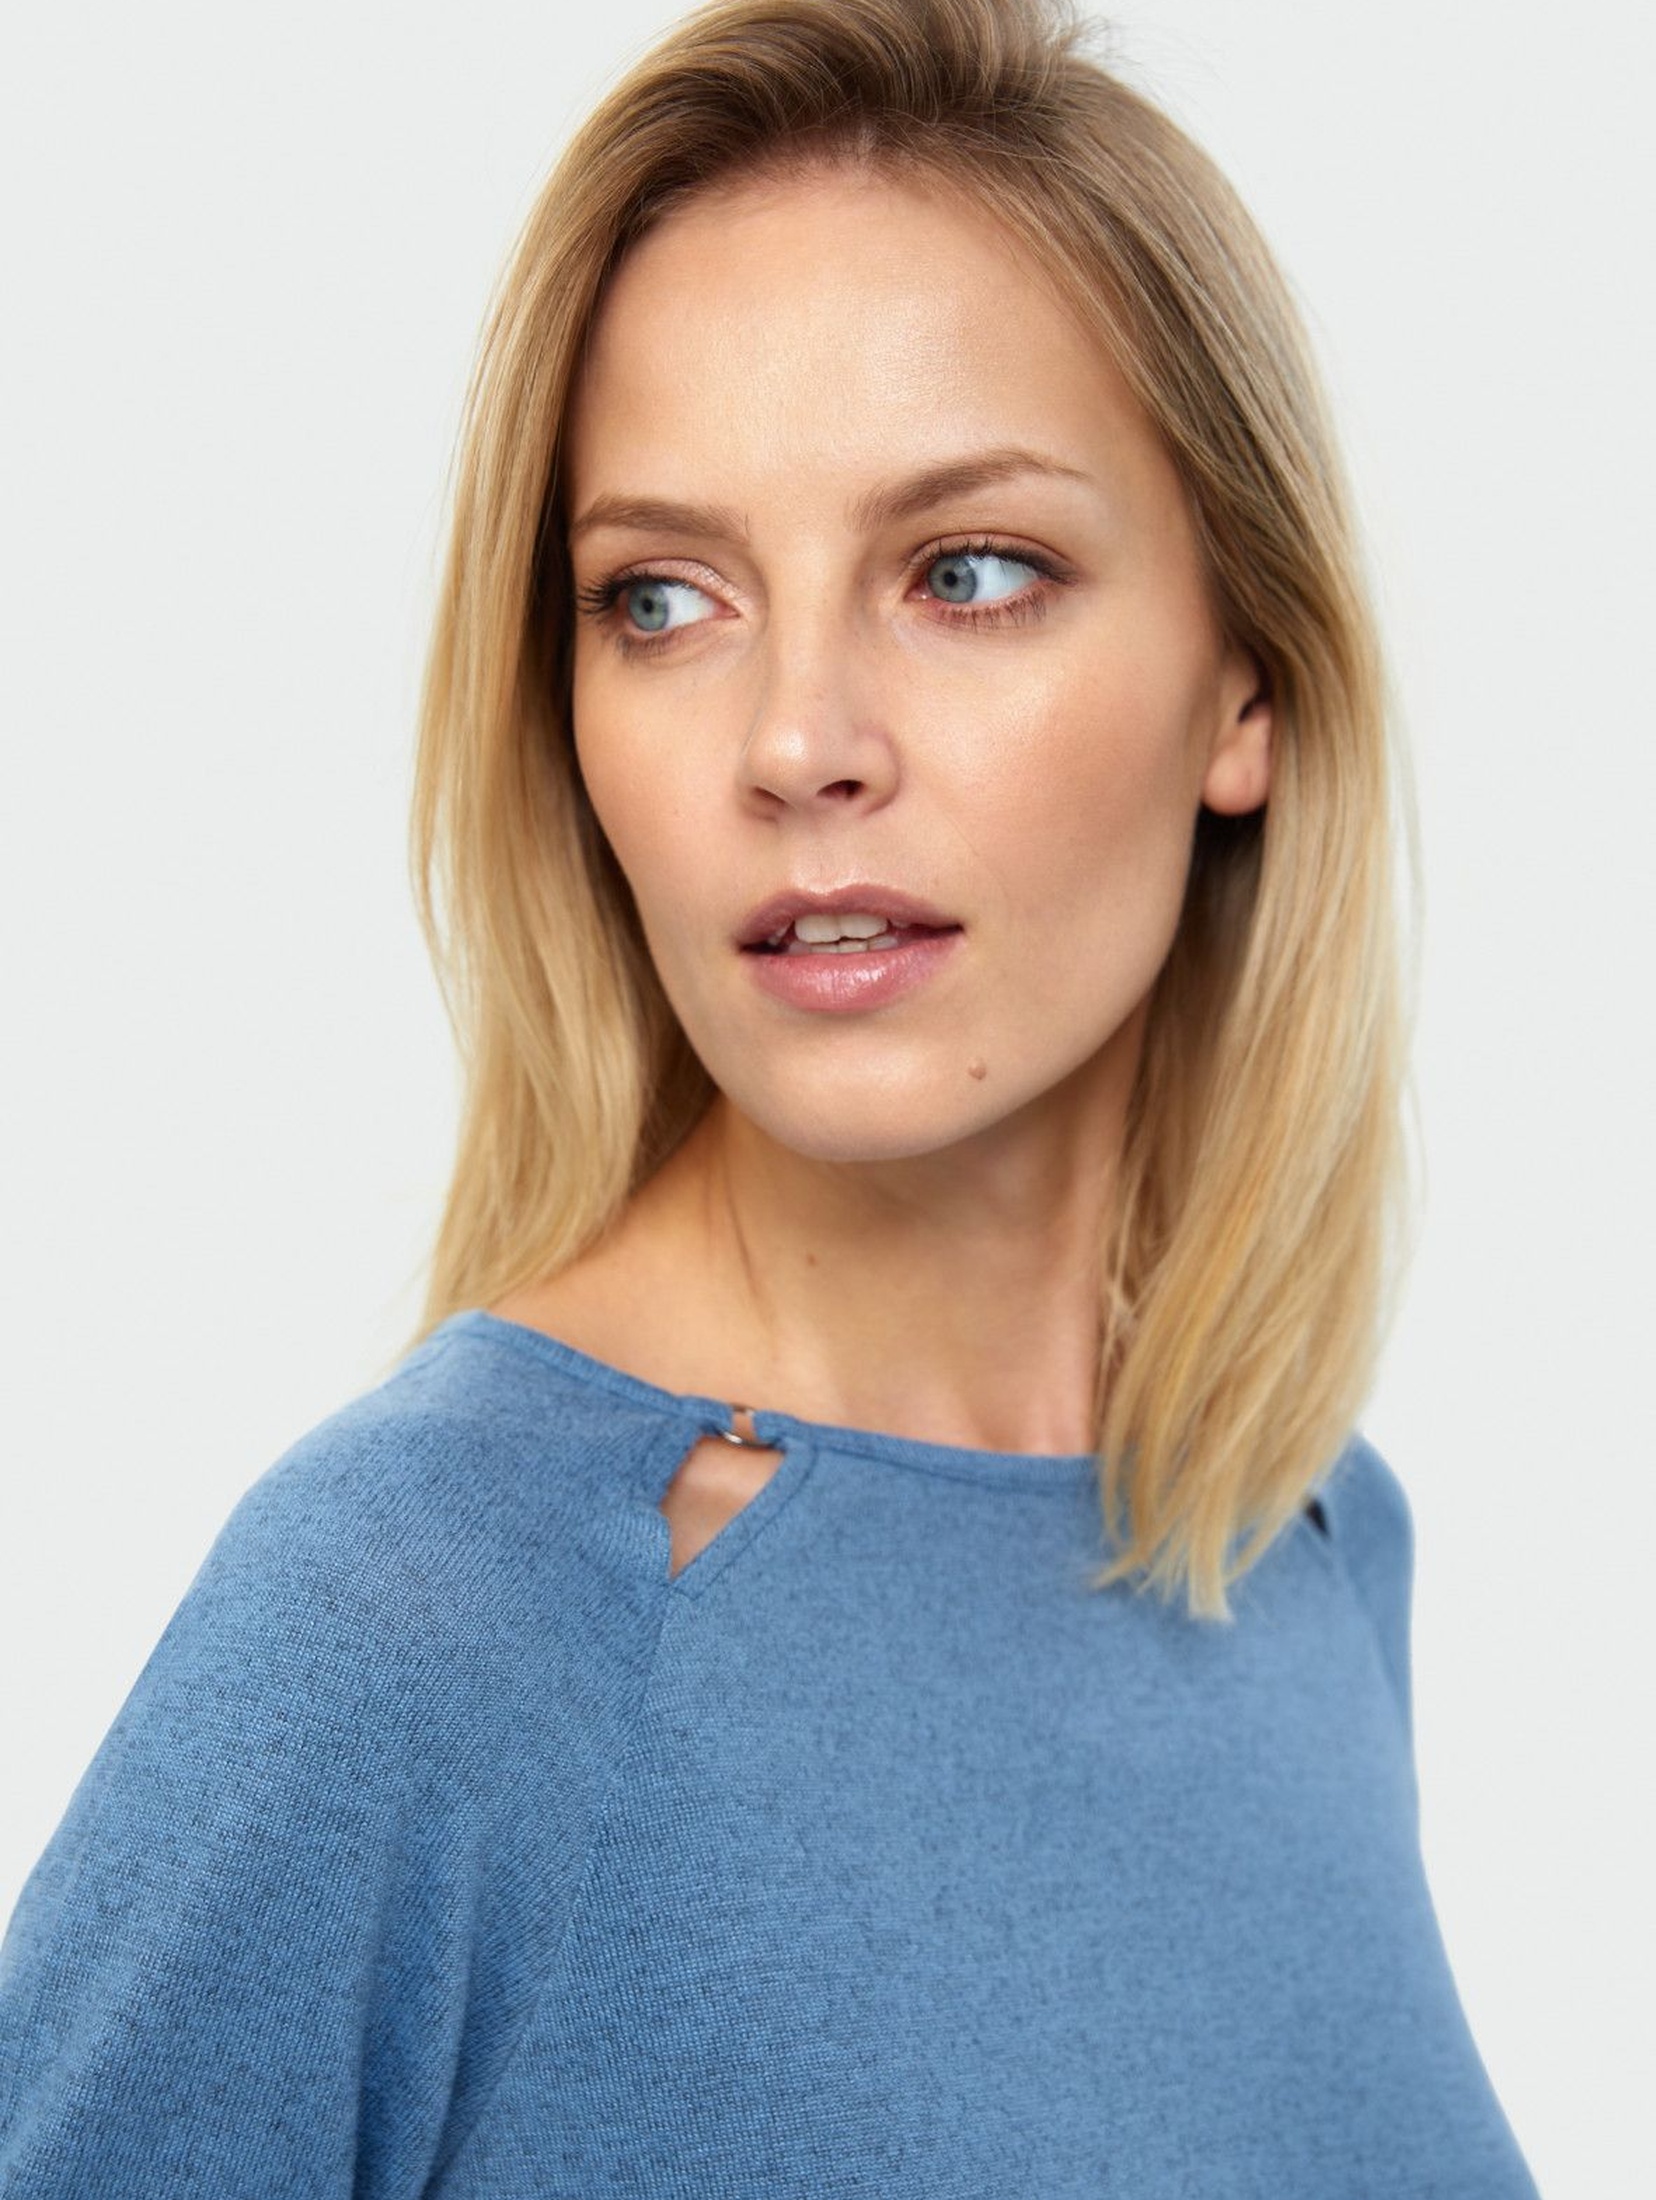 Dopasowany niebieski sweter damski z ozdobnymi wycięciami